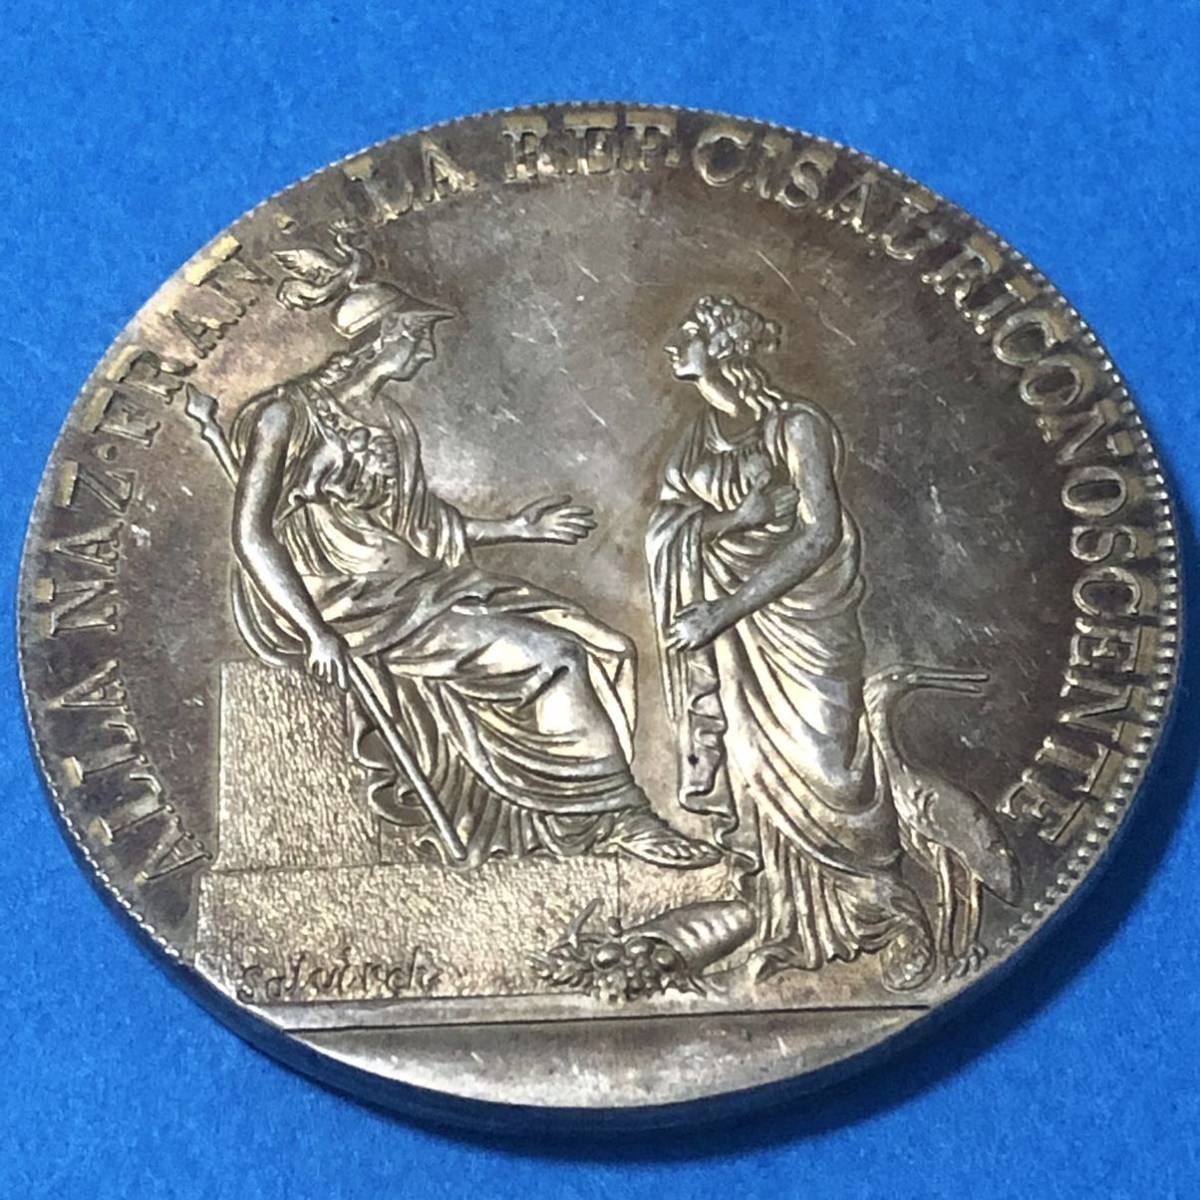 1797年 ナポレオン時代 イタリア遠征 イタリア=チザルピーネ共和国 古錢 一円銀貨 硬貨 貿易銀 古銭 大型銀貨 コイン 骨董品の画像1